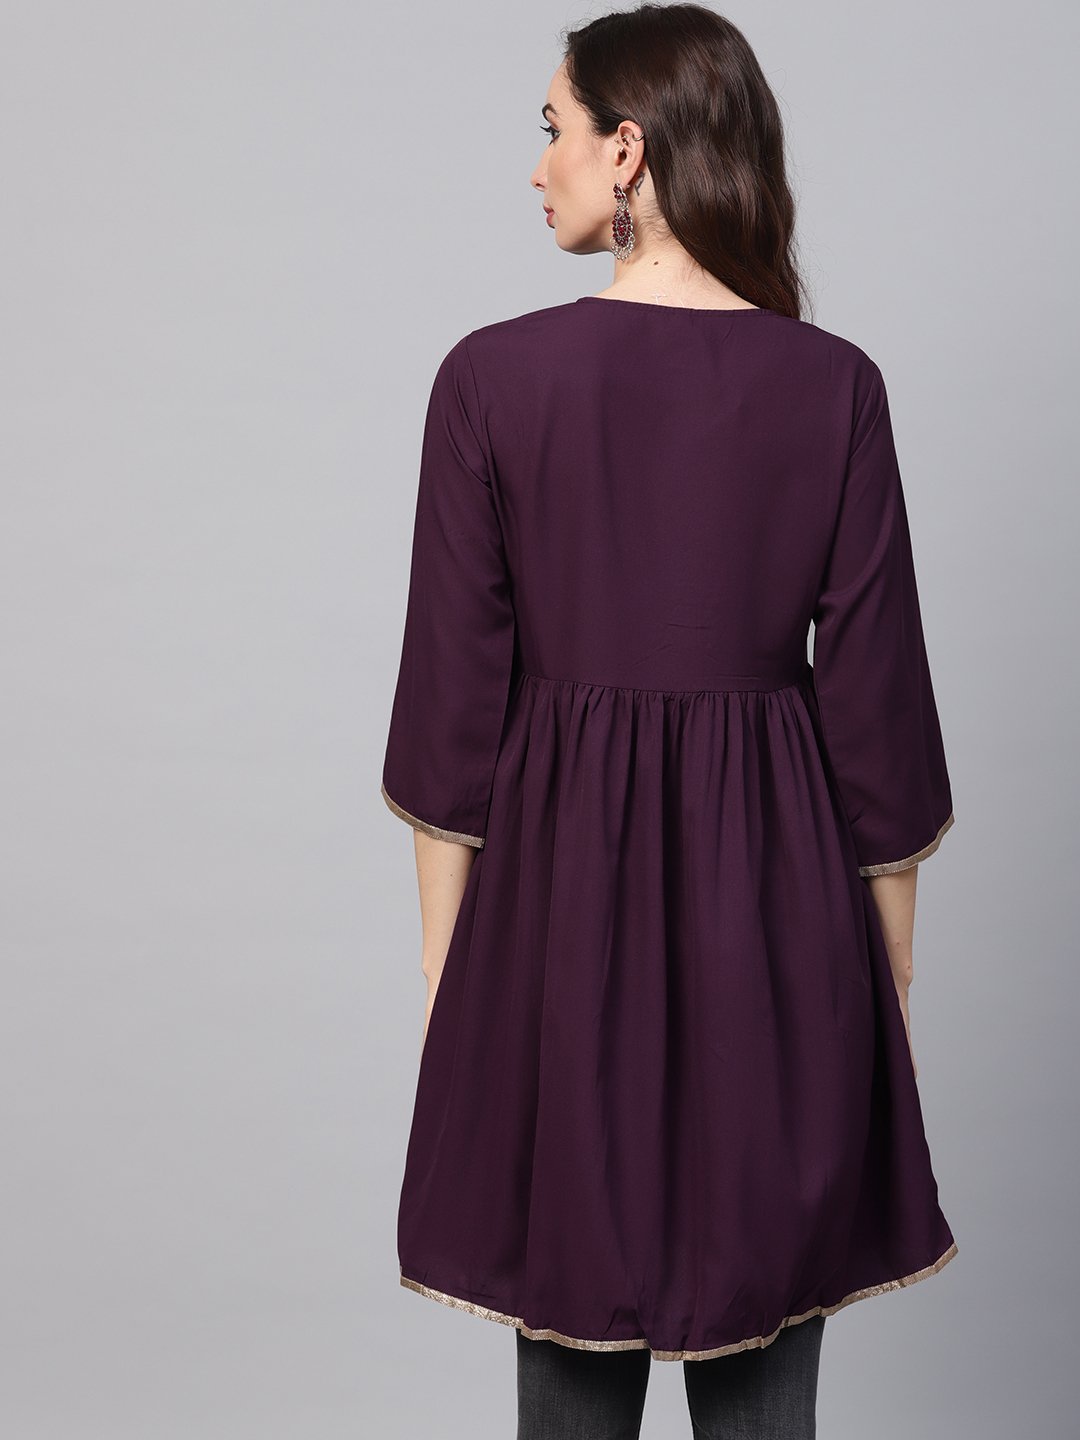 Women's Solid Burgundy Tunic Emblished With Gota & 3/4 Sleeves - Nayo Clothing